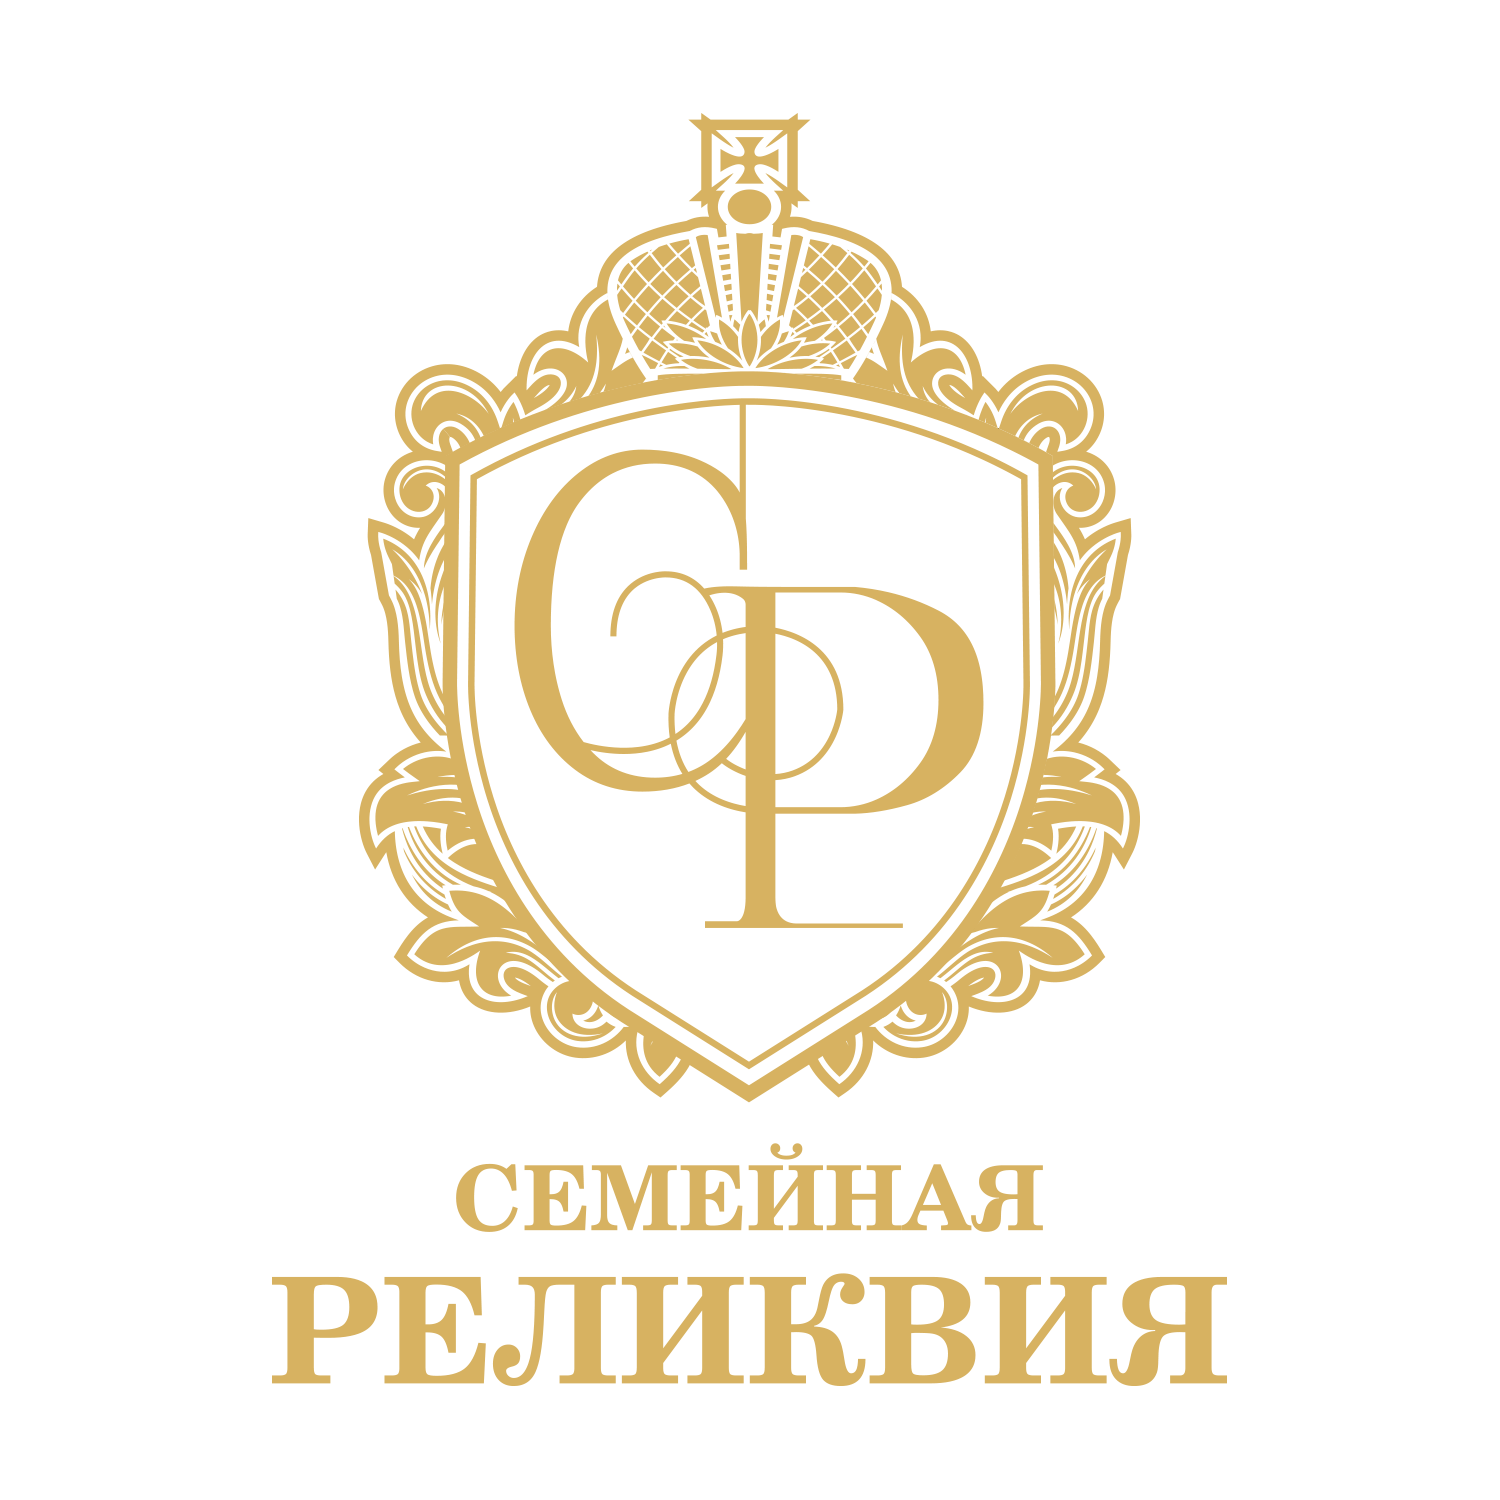 ООО "СЕМЕЙНАЯ РЕЛИКВИЯ" - Город Москва Logo_design_gold.png